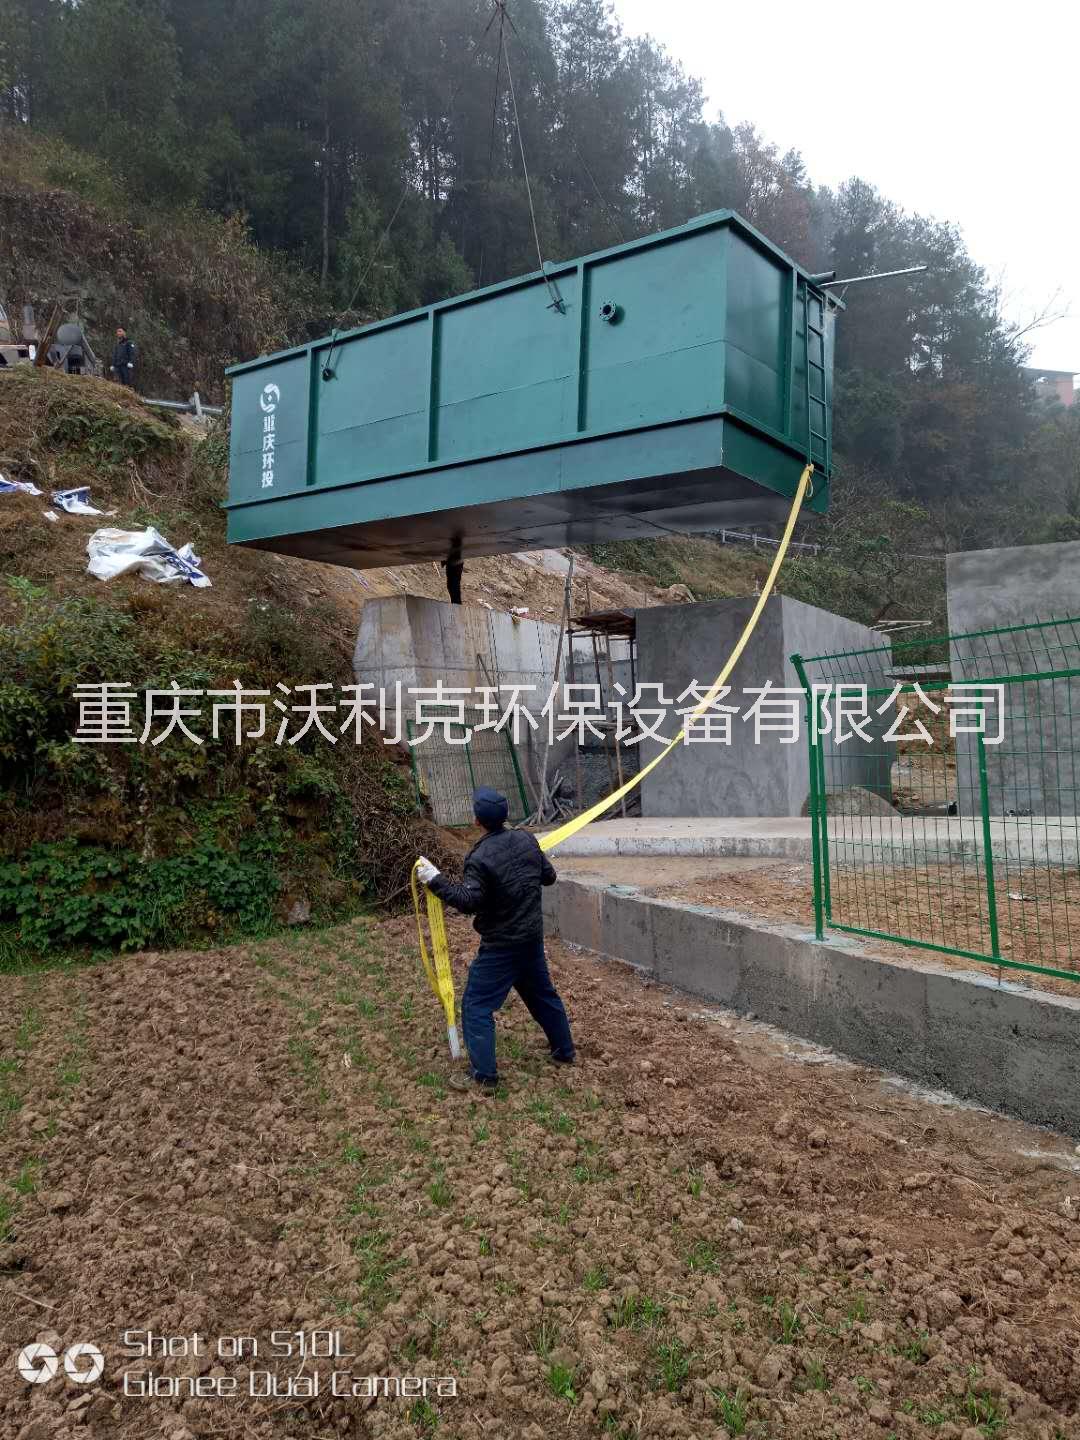 重庆MBR膜生活污水处理设备生产厂家-沃利克专业生产图片